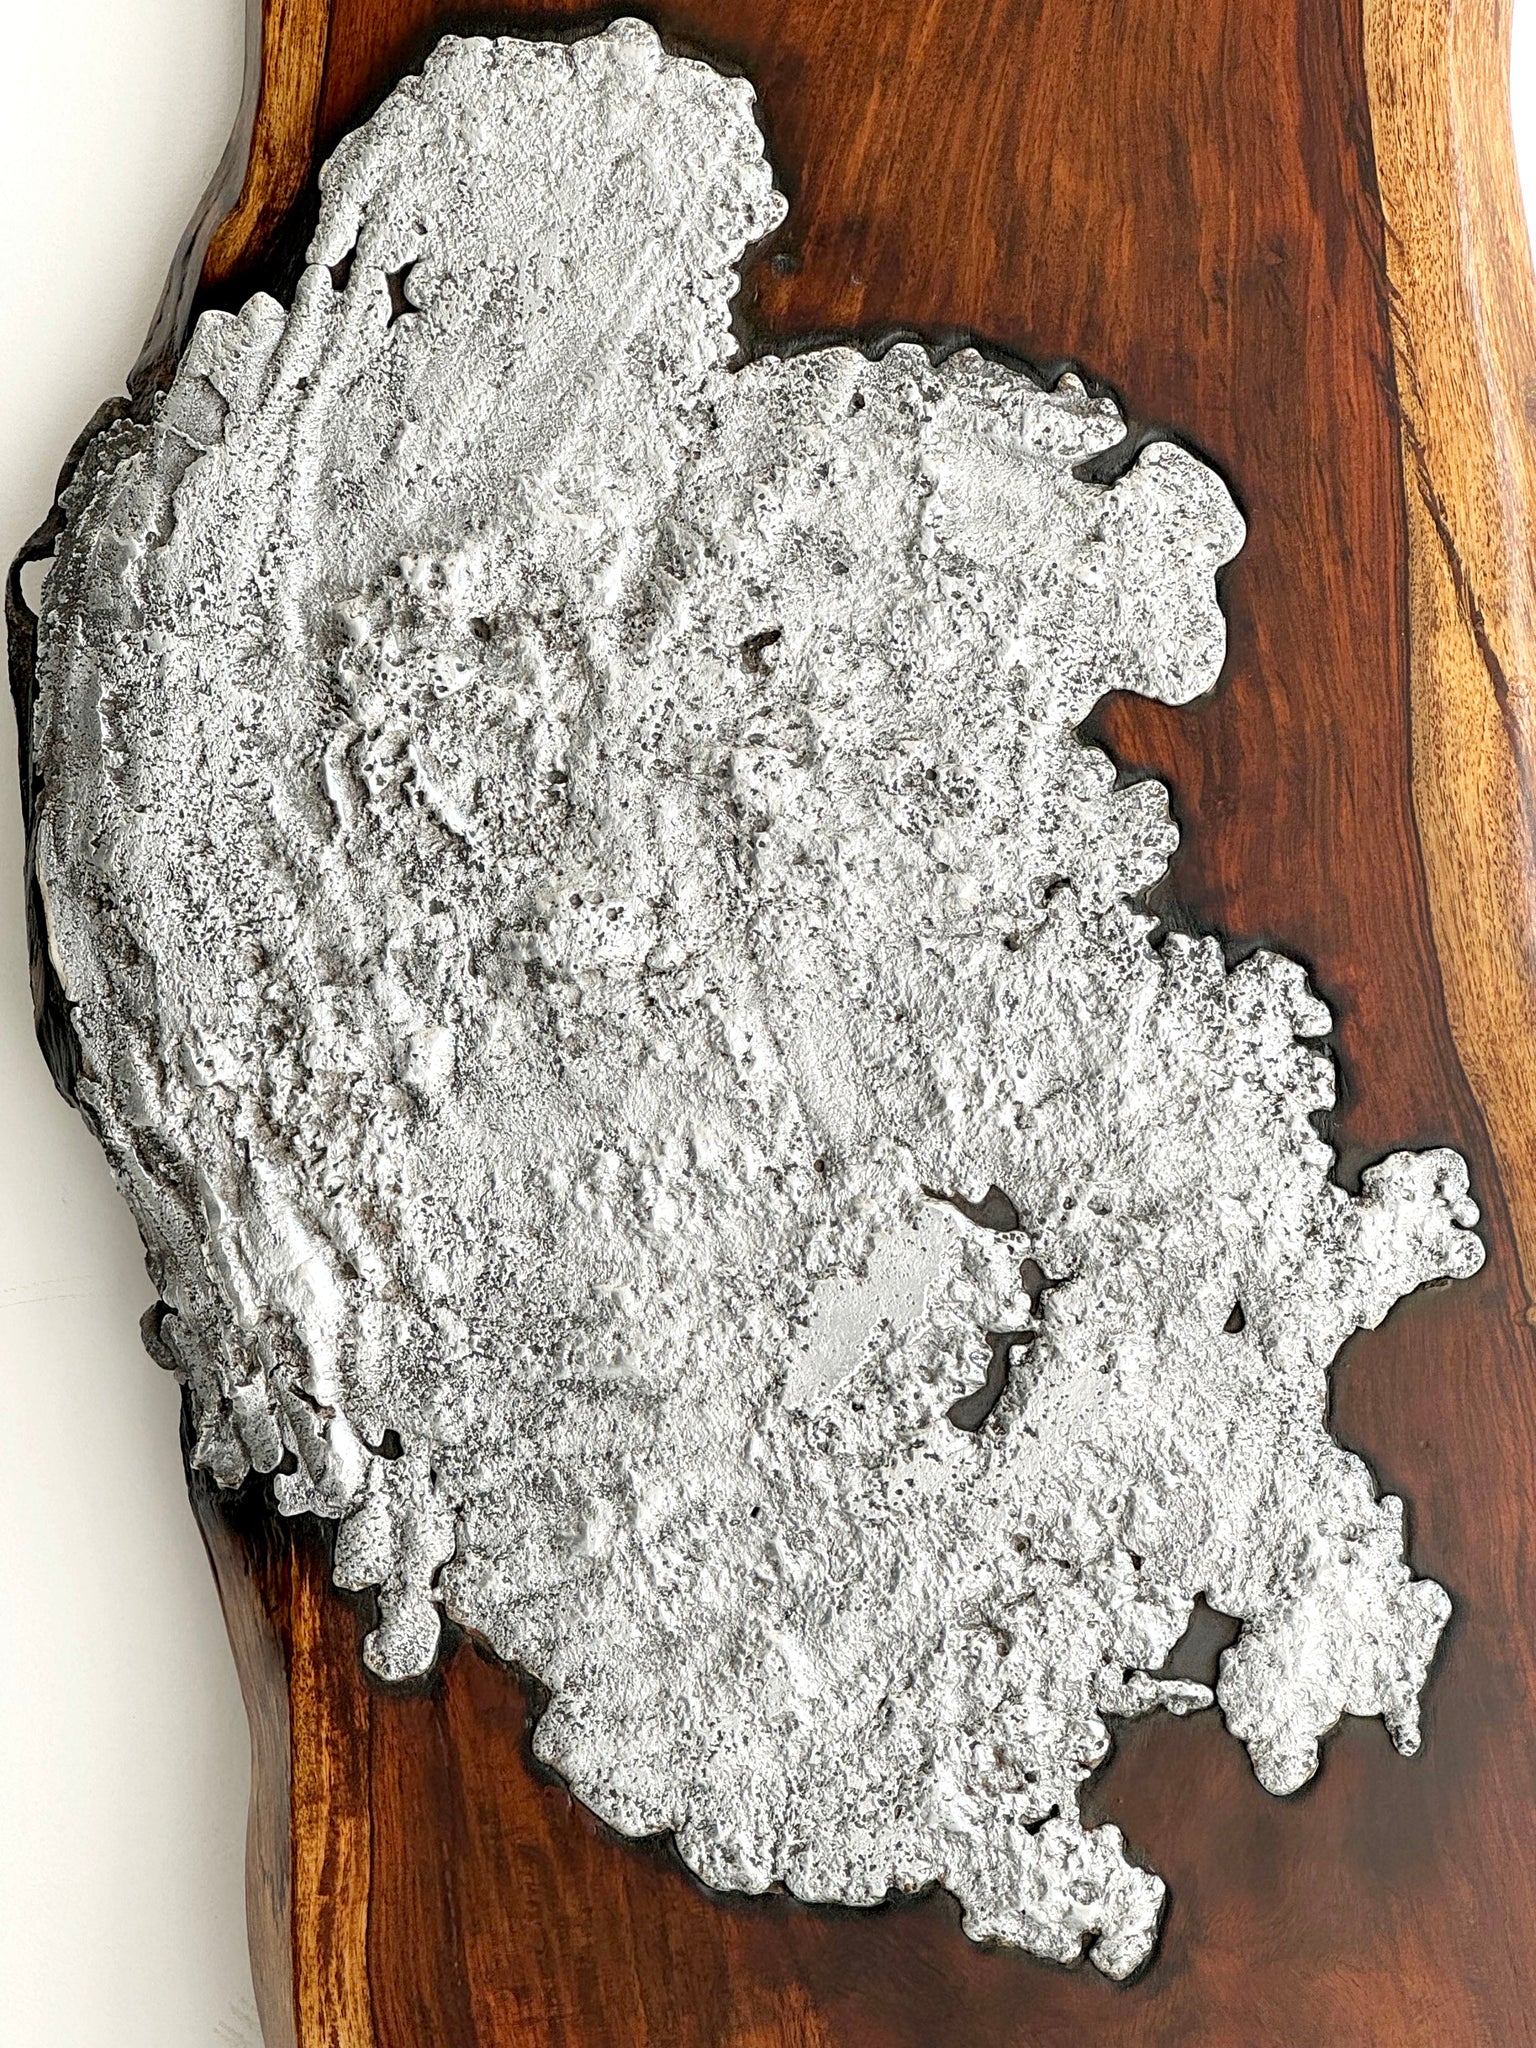 Molten Aluminium on Wood // 02